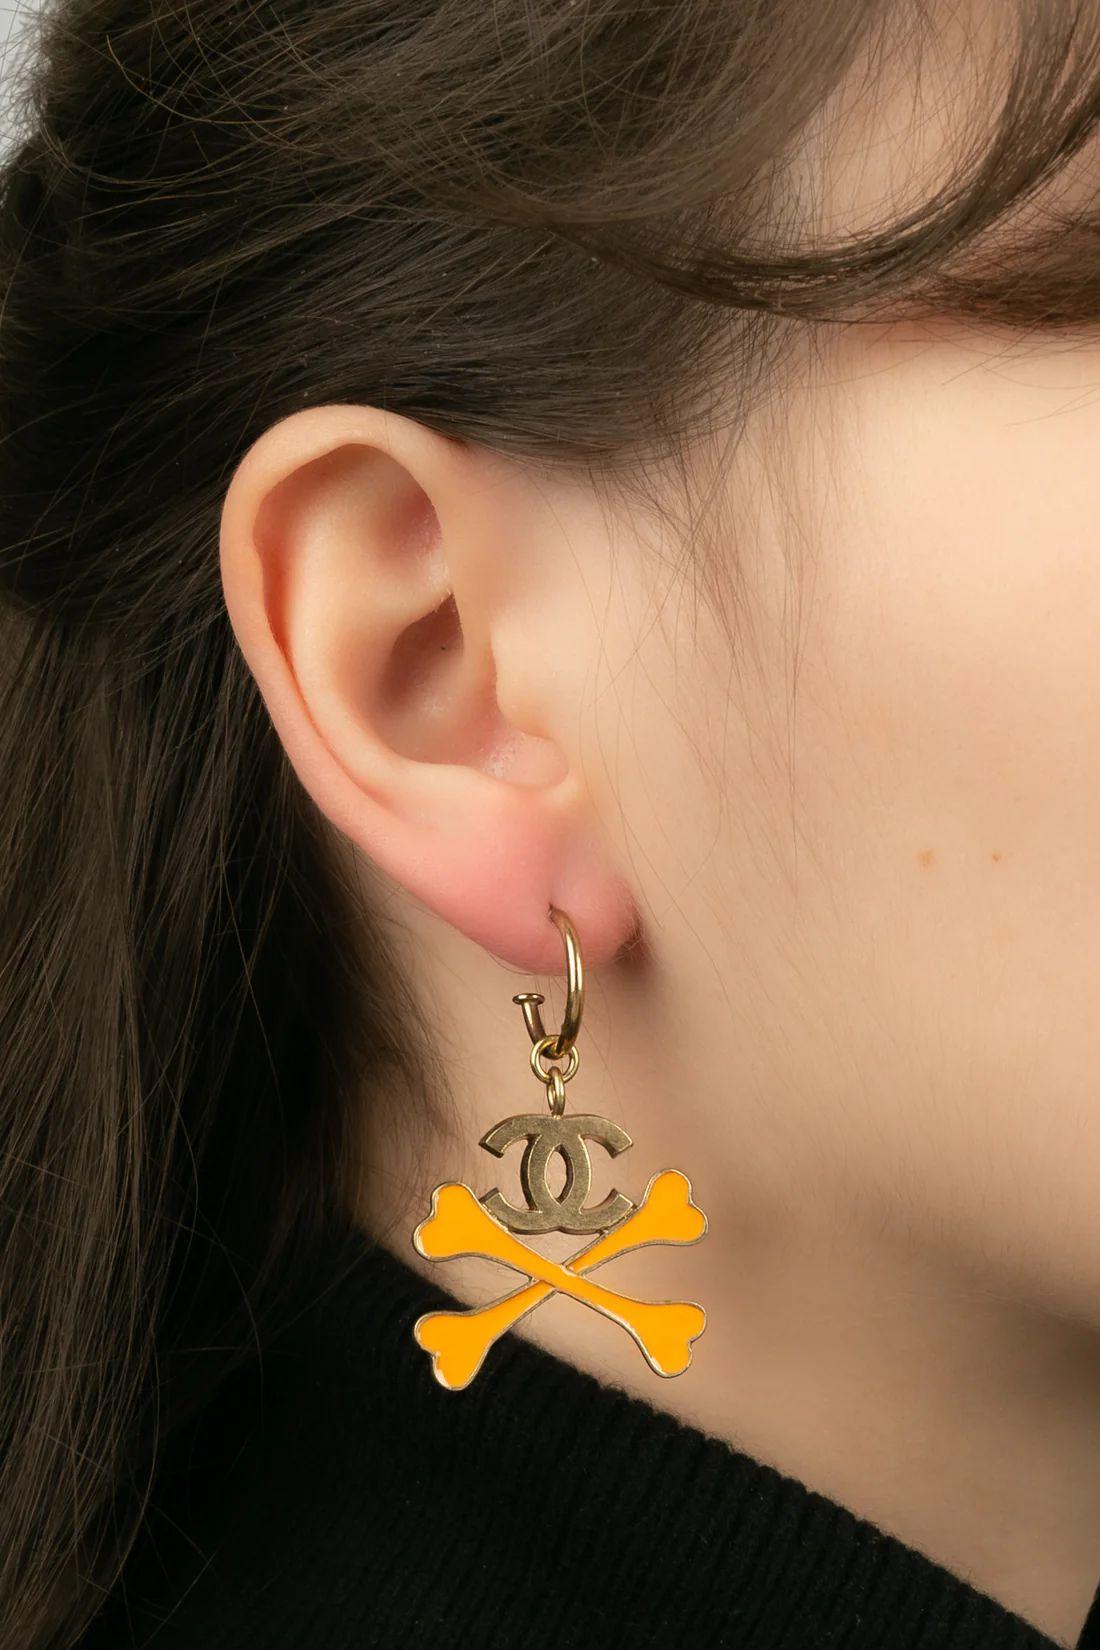 Chanel - (Made in France) Ohrringe aus goldenem Metall mit orangefarbener Emaille. Cruise Collection 2003.

Zusätzliche Informationen:
Abmessungen: 4,5 H cm
Zustand: Sehr guter Zustand
Verkäufer Ref Nummer: BOB245